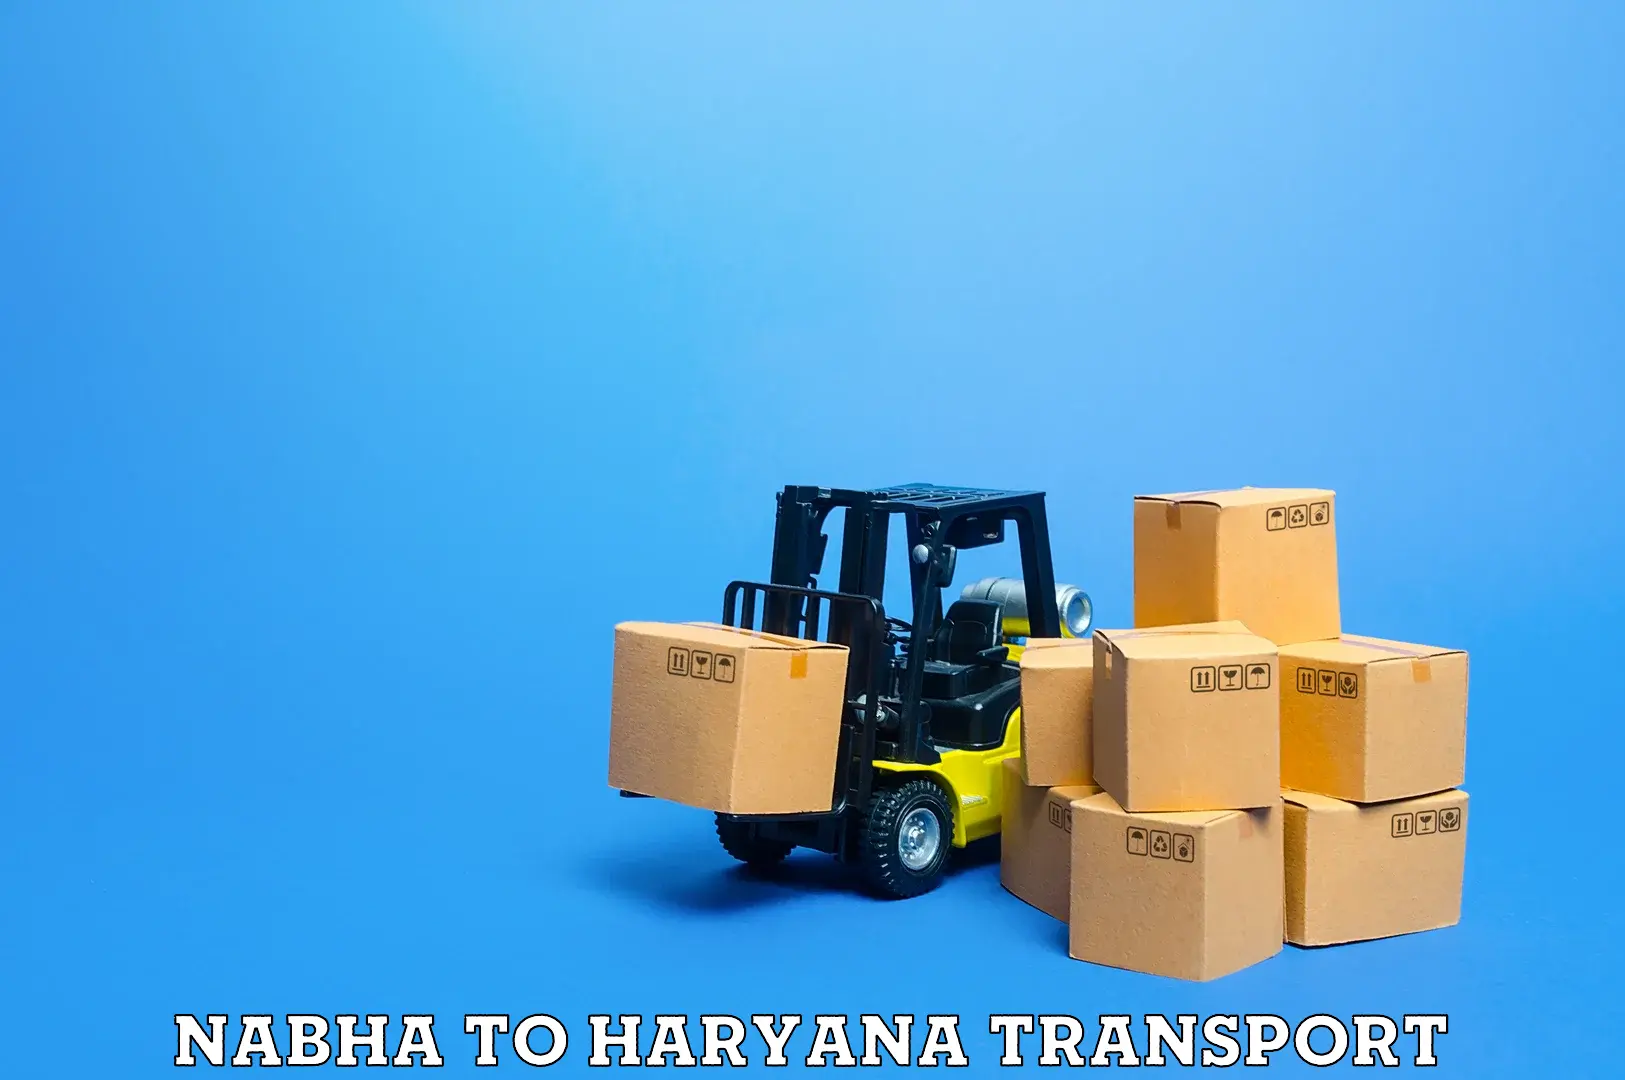 Shipping services Nabha to Fatehabad